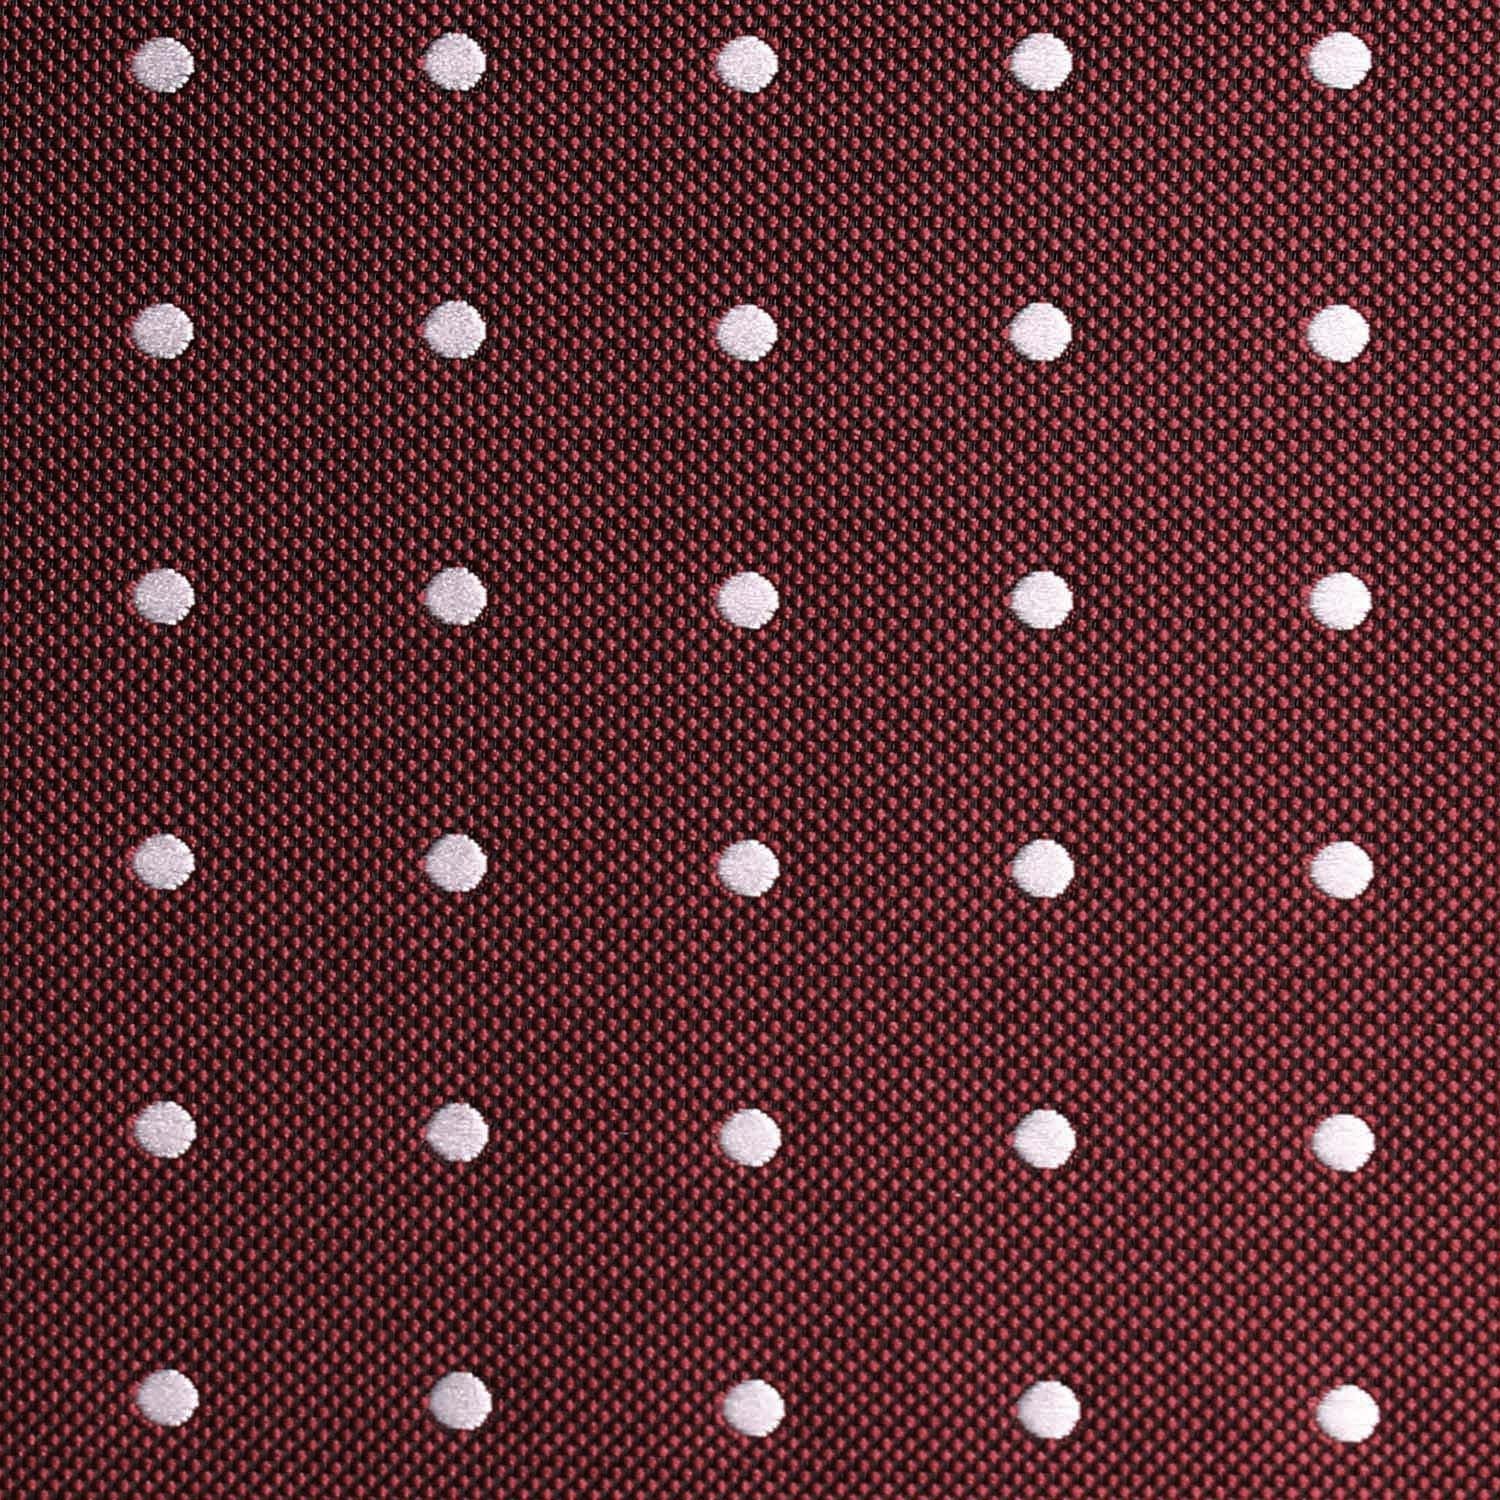 Mahogany Maroon with White Polka Dots Fabric Skinny Tie M123